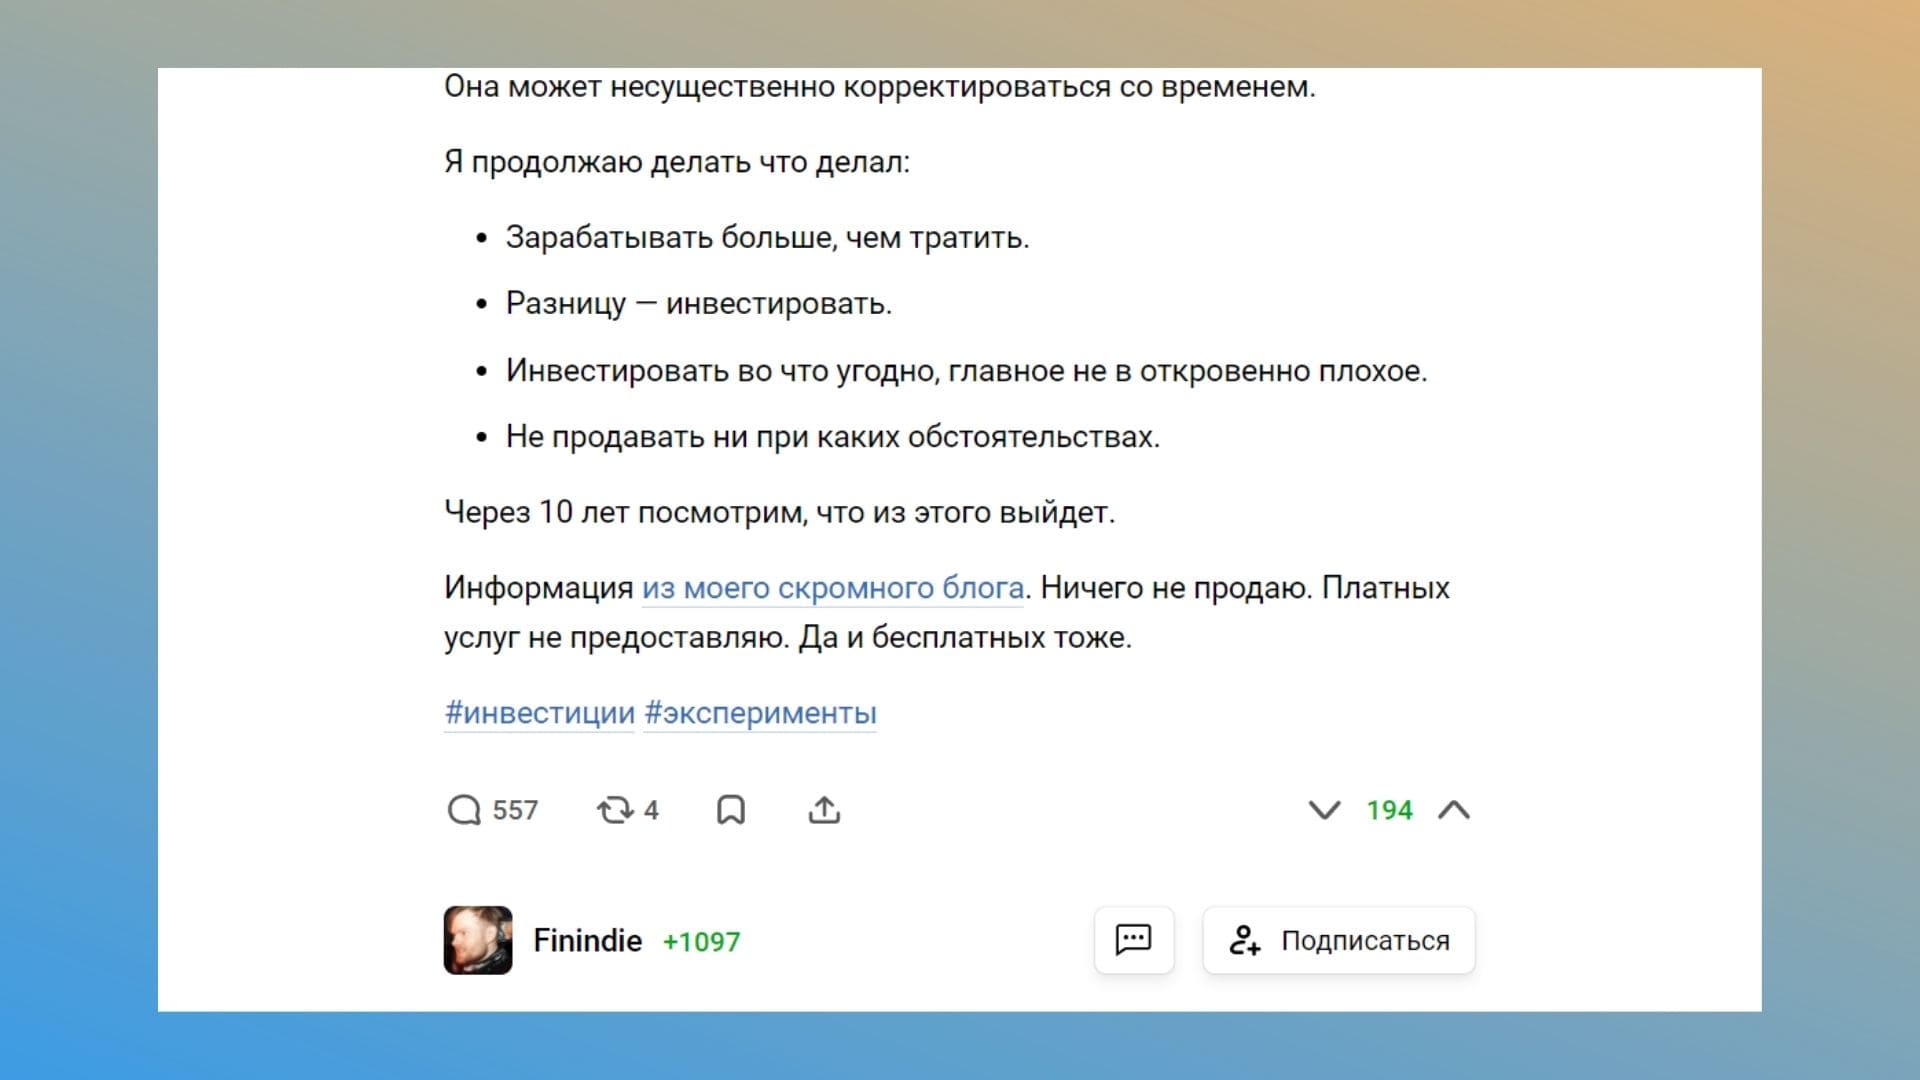 Автор разместил статью на VC.ru, собрав ее из постов своего блога и ненавязчиво ведет трафик туда